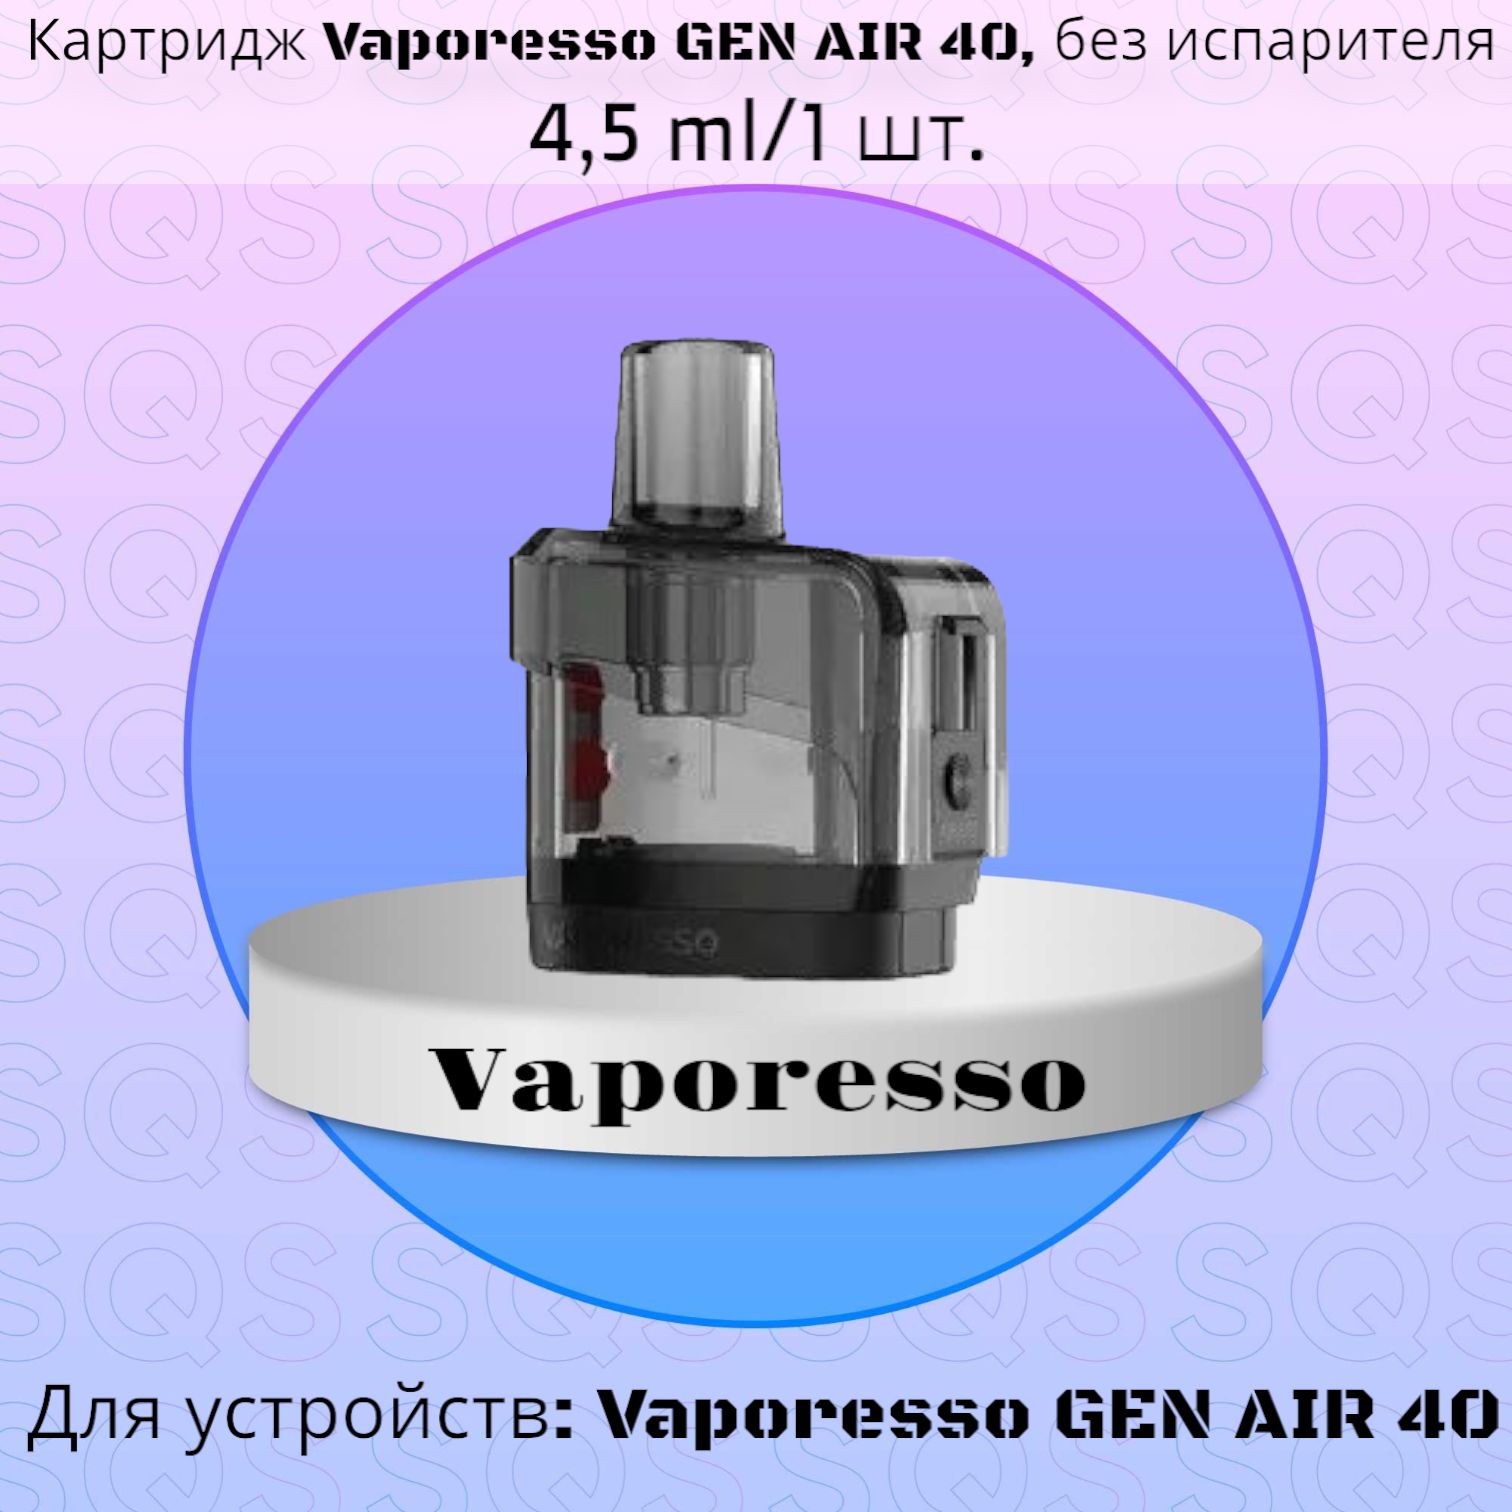 Воздух до 40 c. Vaporesso Gem Air 40 комплектующие цена.